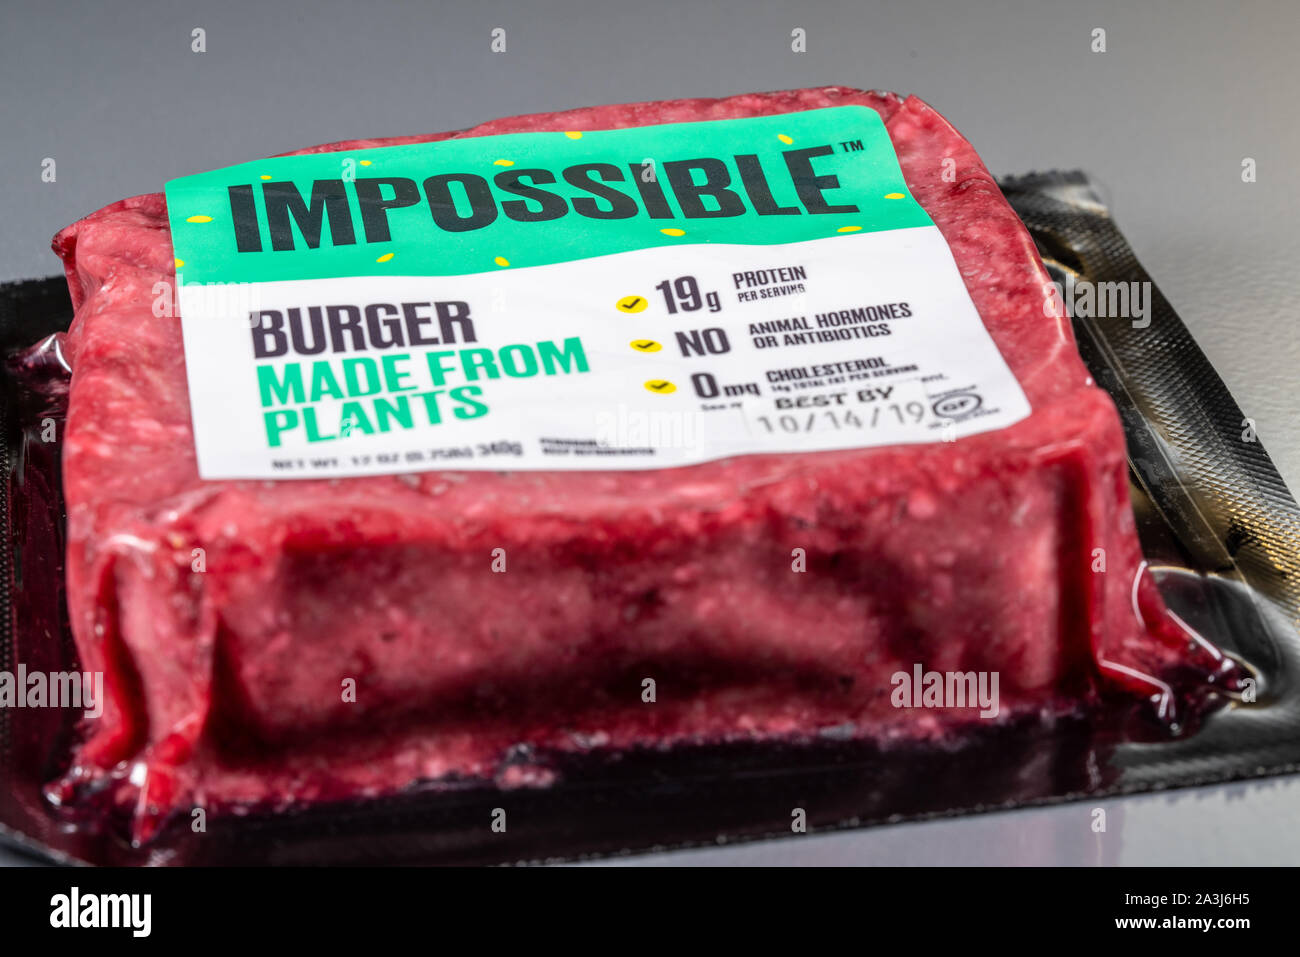 MORGANTOWN WV - 8 Ottobre 2019: imballaggio per alimenti impossibile hamburger fatto da piante su sfondo di acciaio Foto Stock